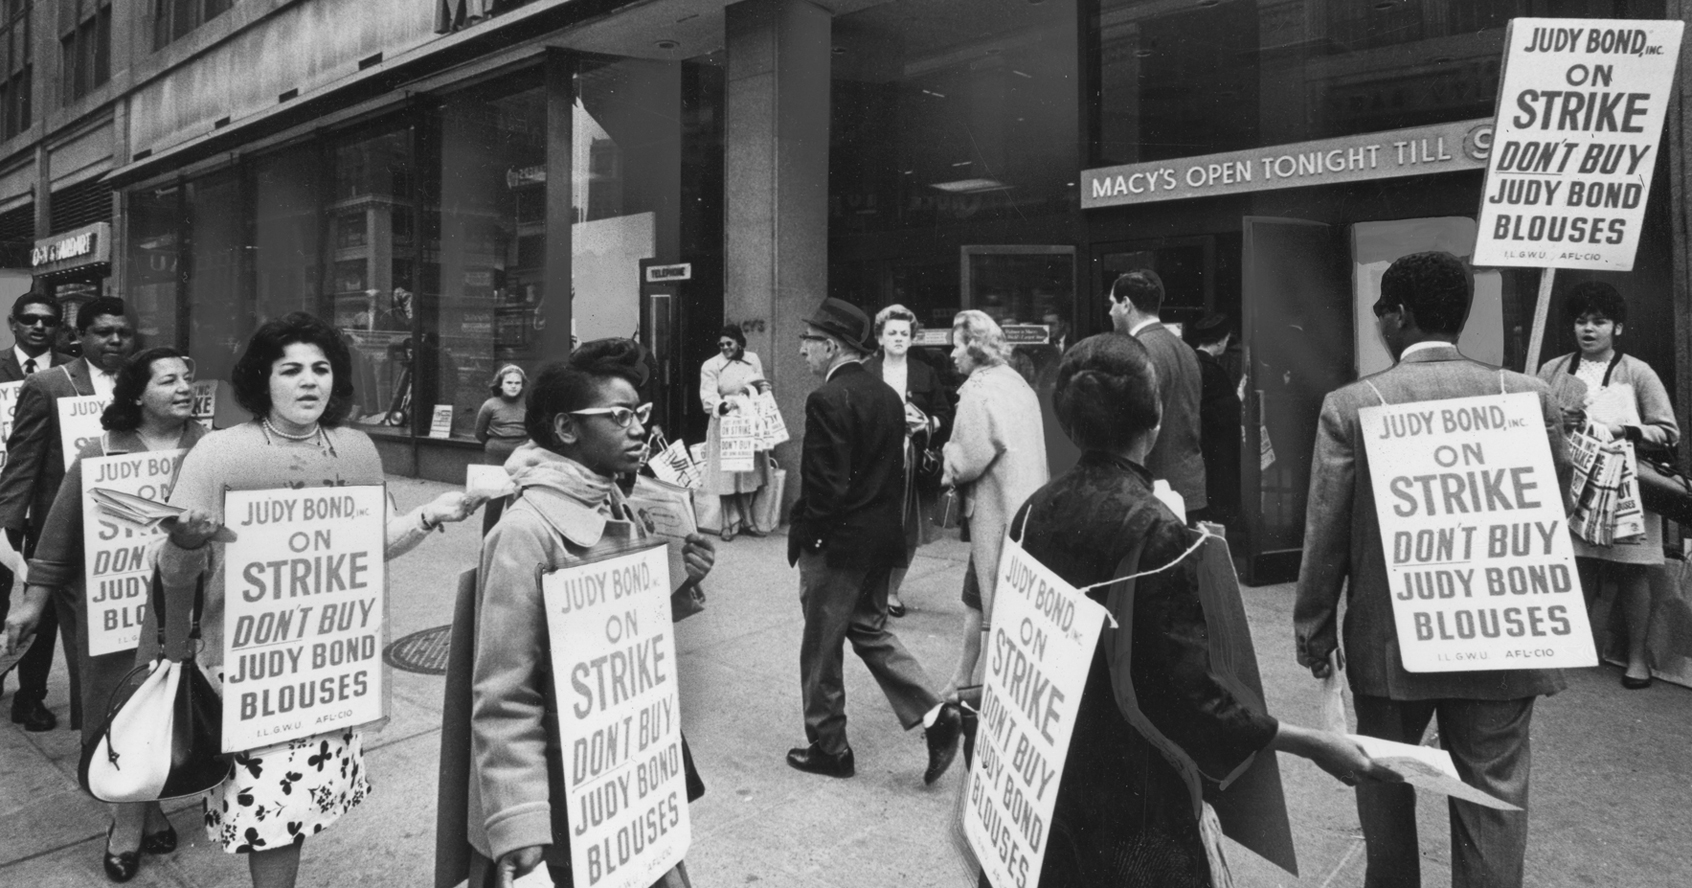 Un grupo de trabajadores en huelga marchan afuera de Macy's mientras llevan carteles que alientan a las personas a no comprar blusas de Judy Bond